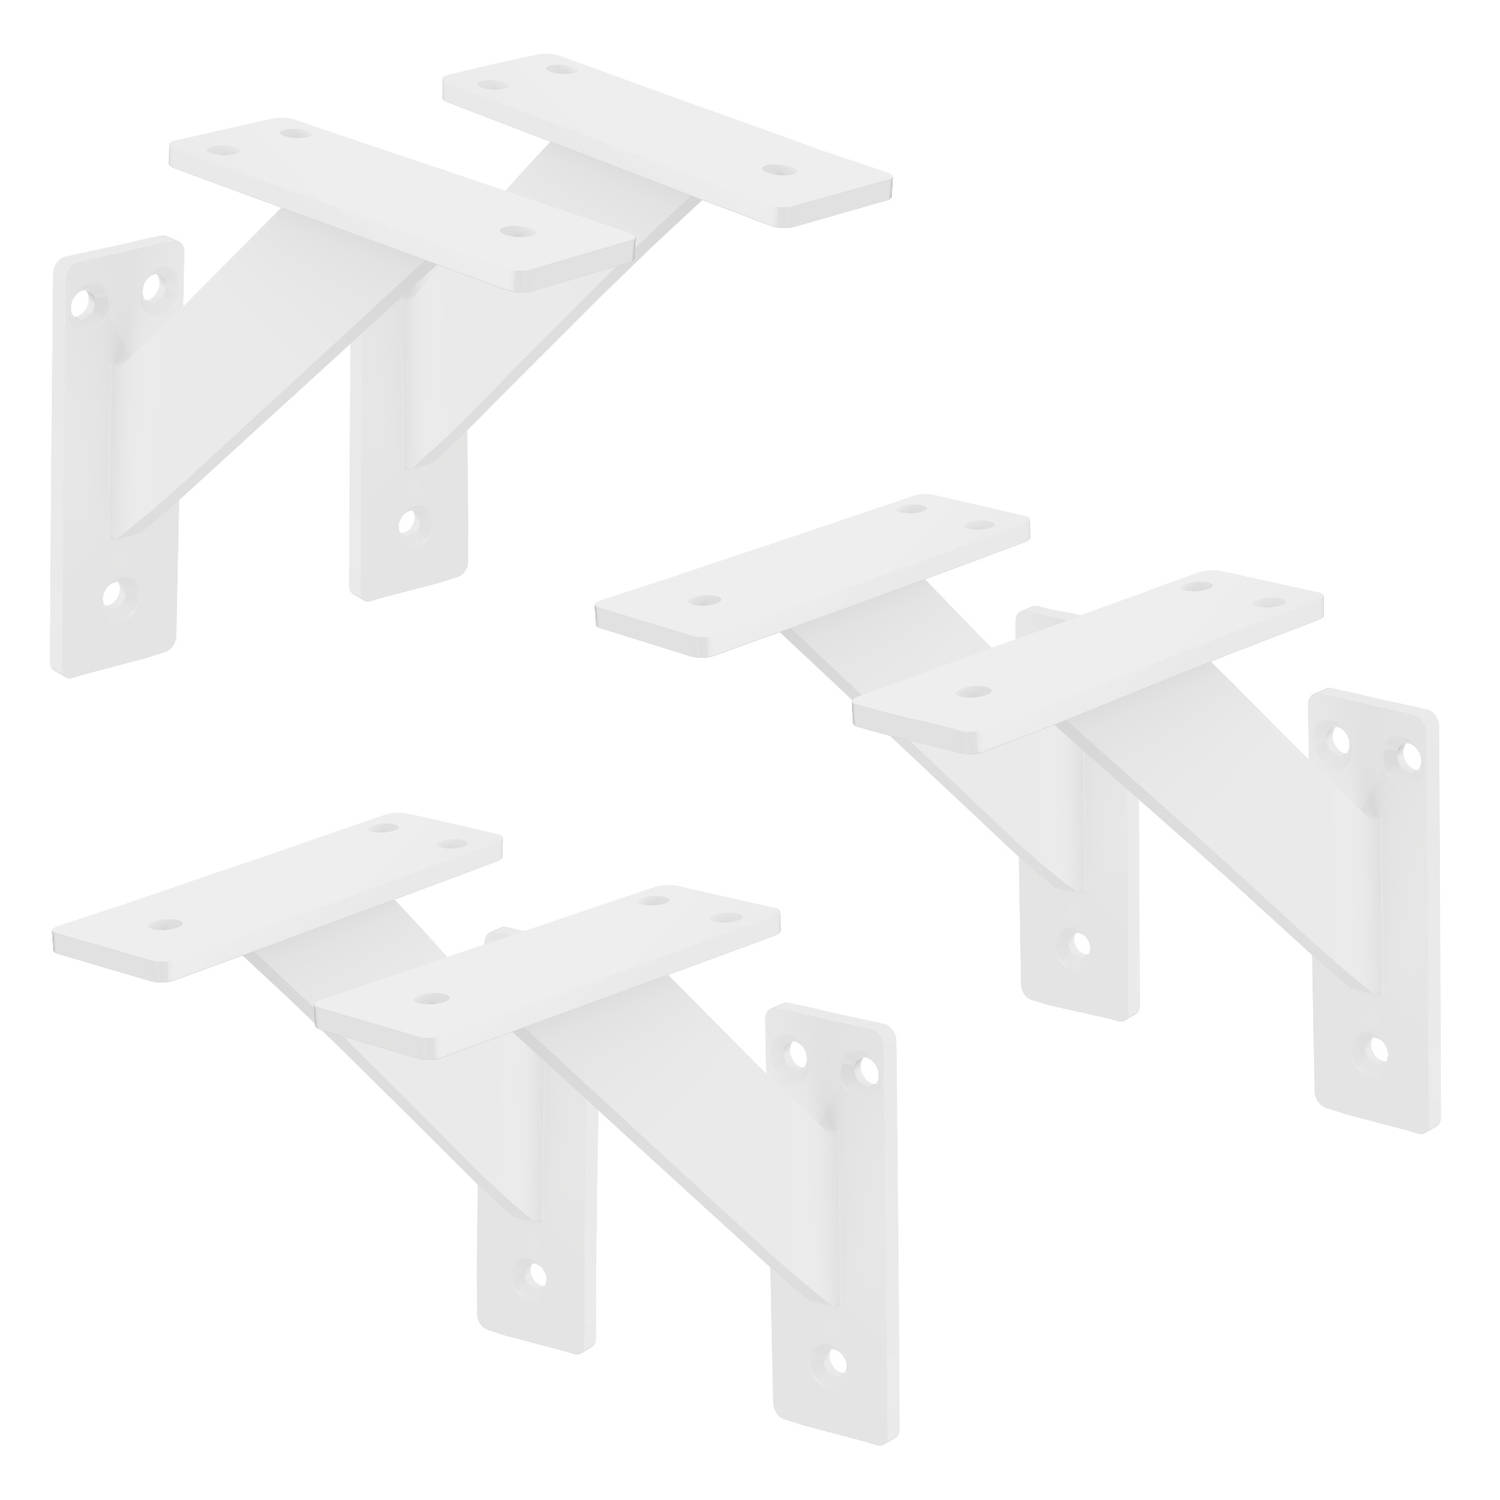 ML-Design 6 stuks Plankdrager 120x120 mm, Wit, Aluminium, Zwevende plankdrager, Plankdrager, Wanddrager voor plankdrager, Plankdrager voor wandmontage, Wandplank Wanddrager Plankdr